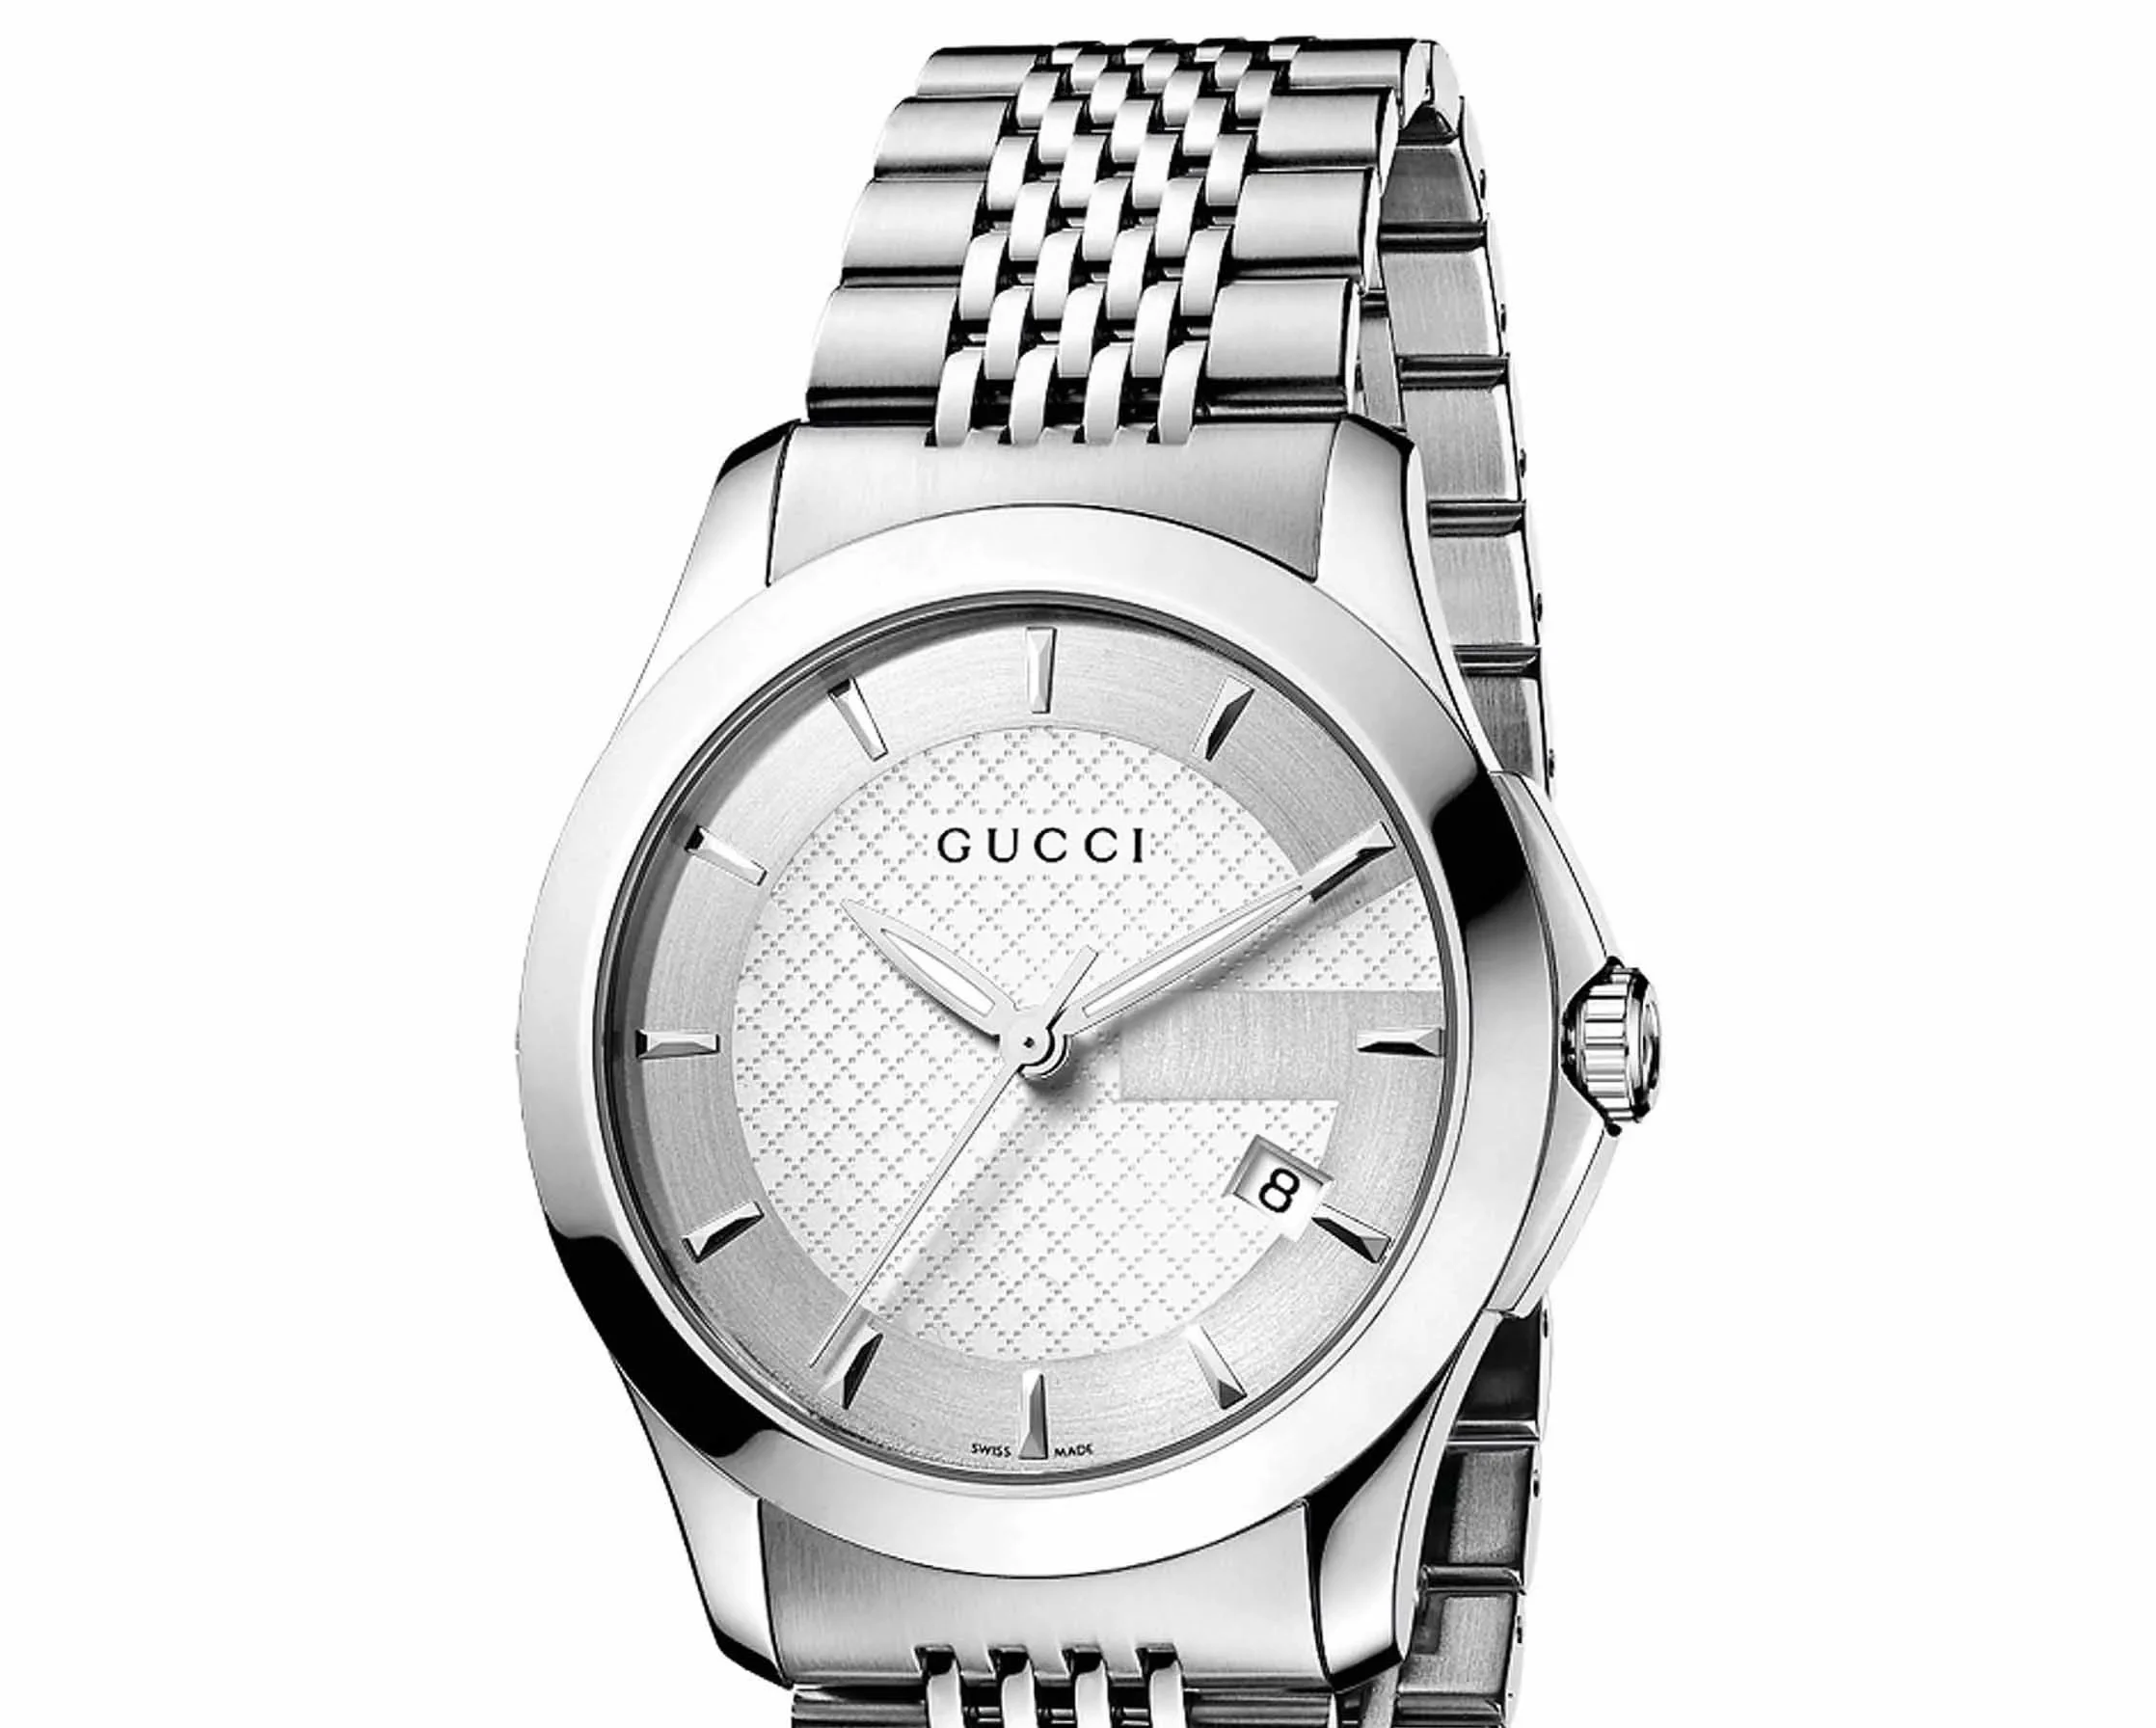 Đồng hồ Gucci Swiss Made giá bao nhiêu?